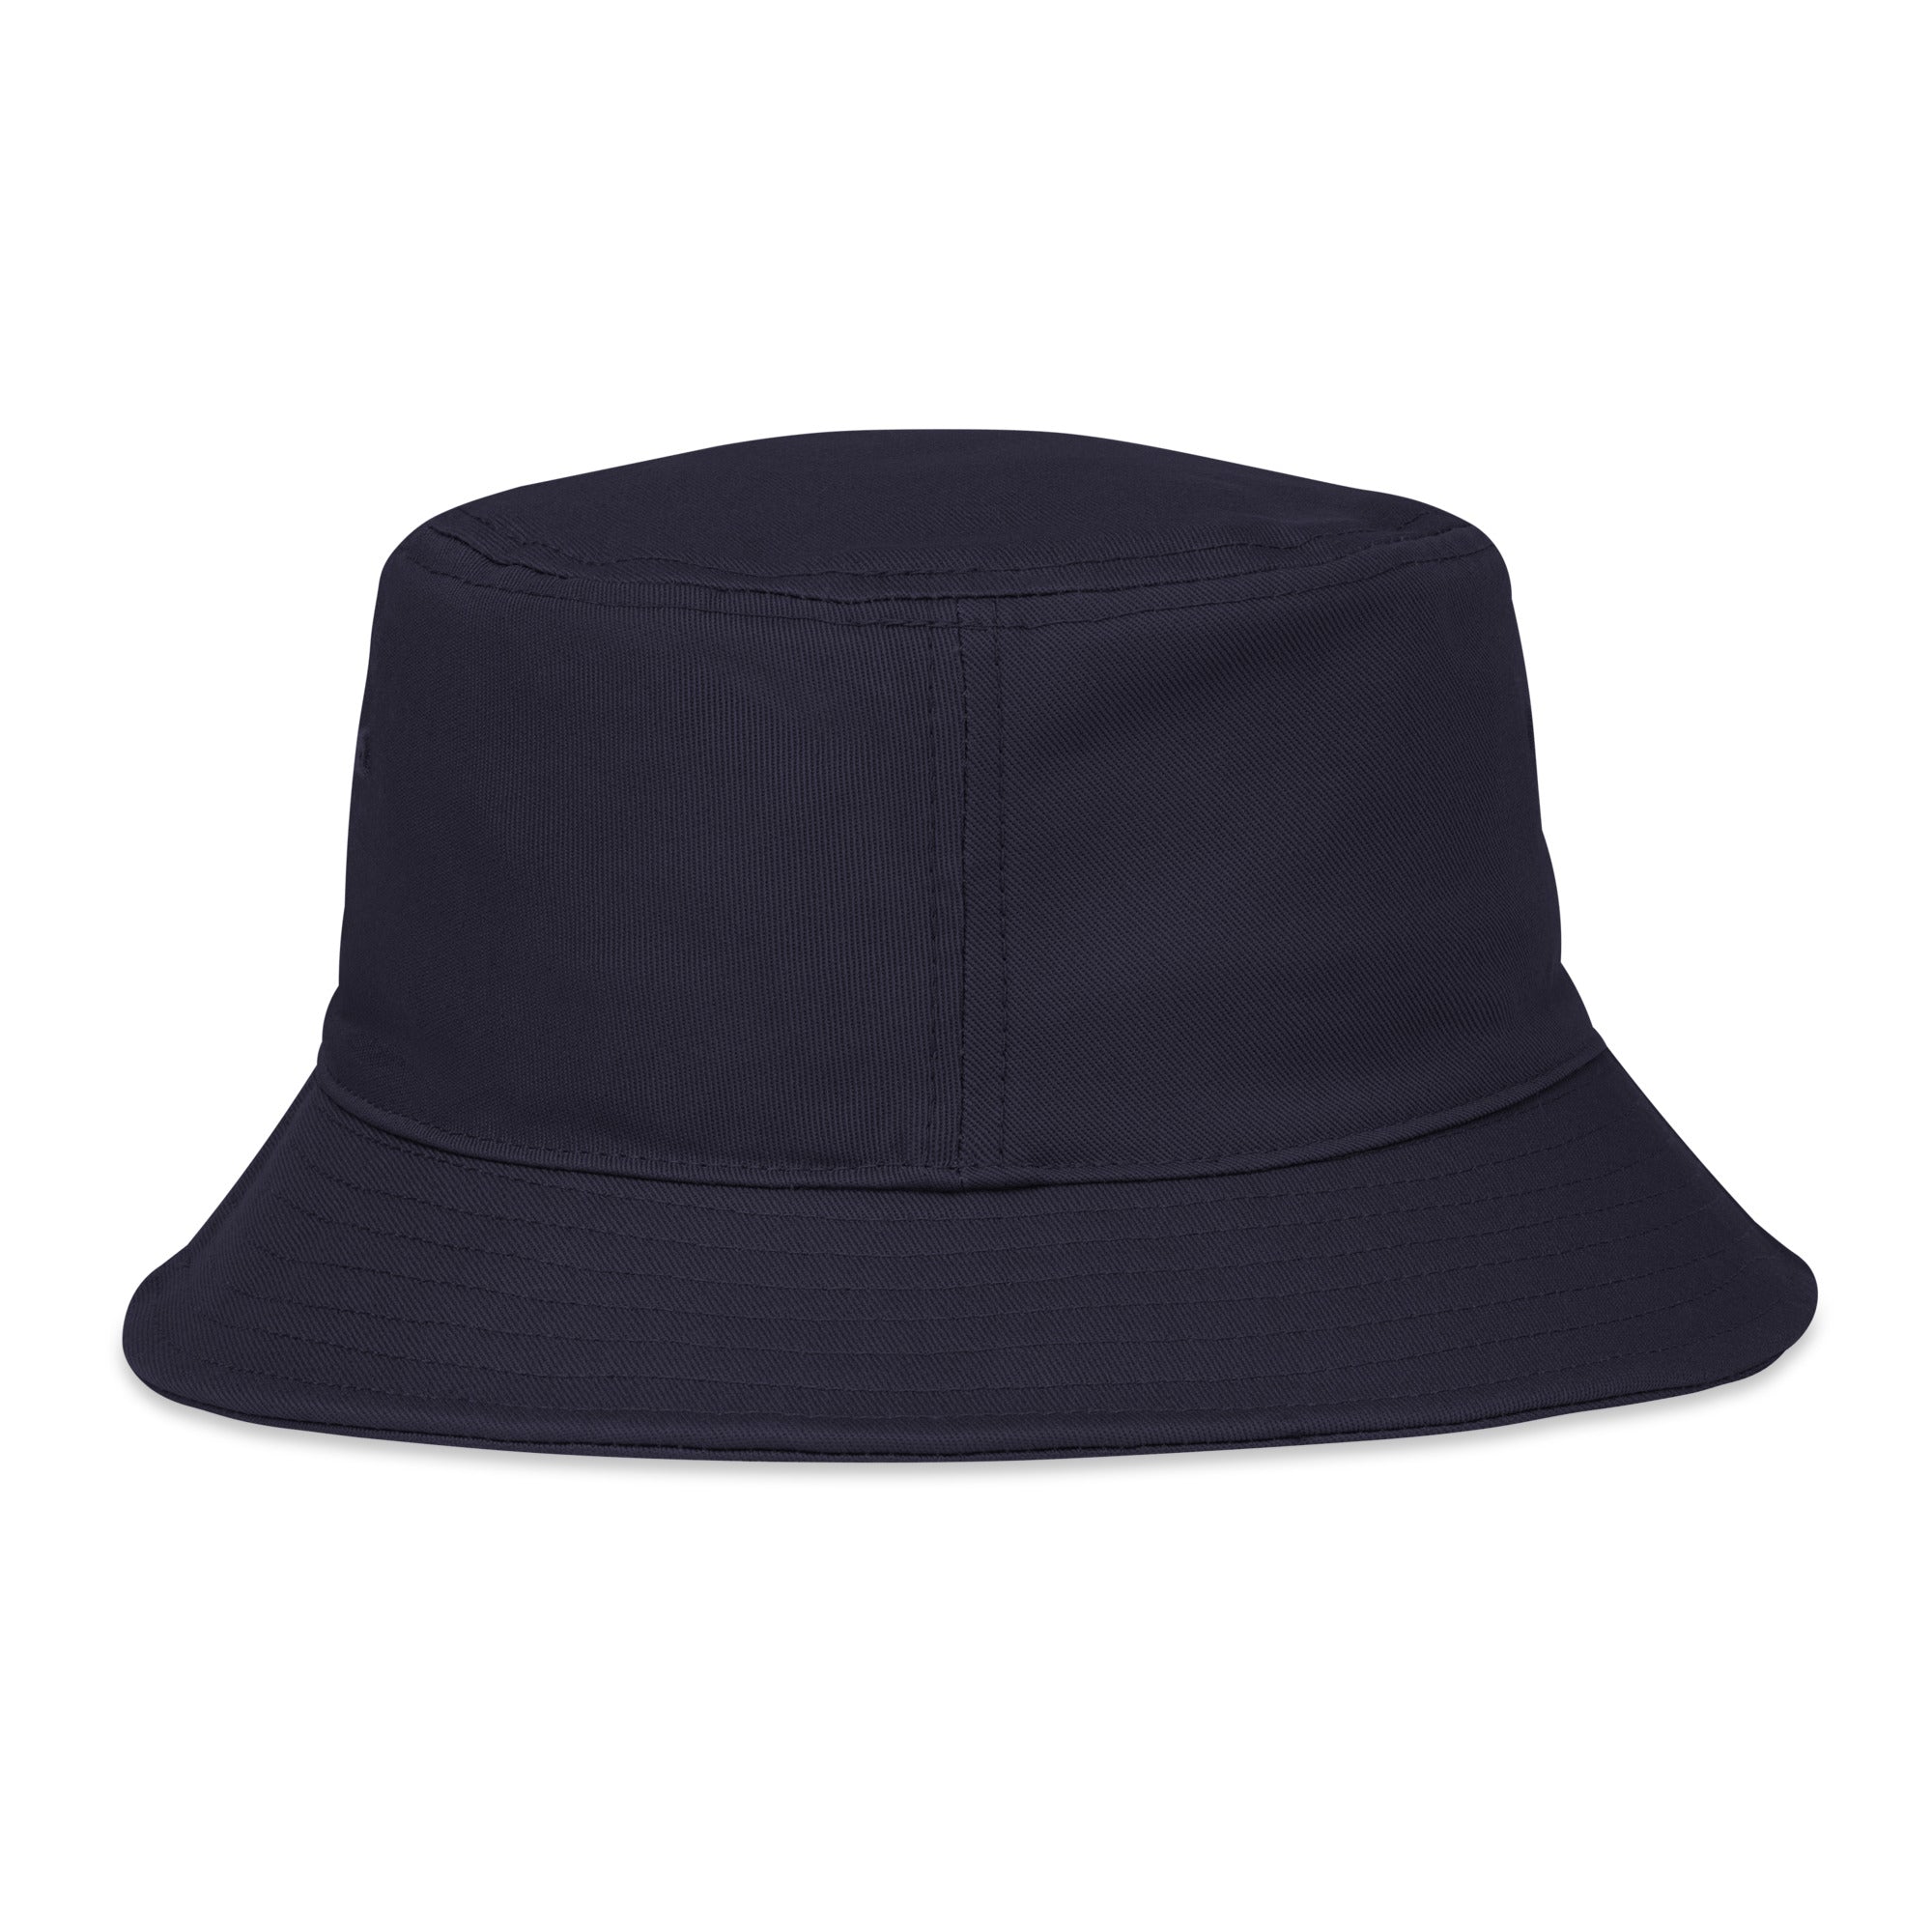 Vergex bucket hat